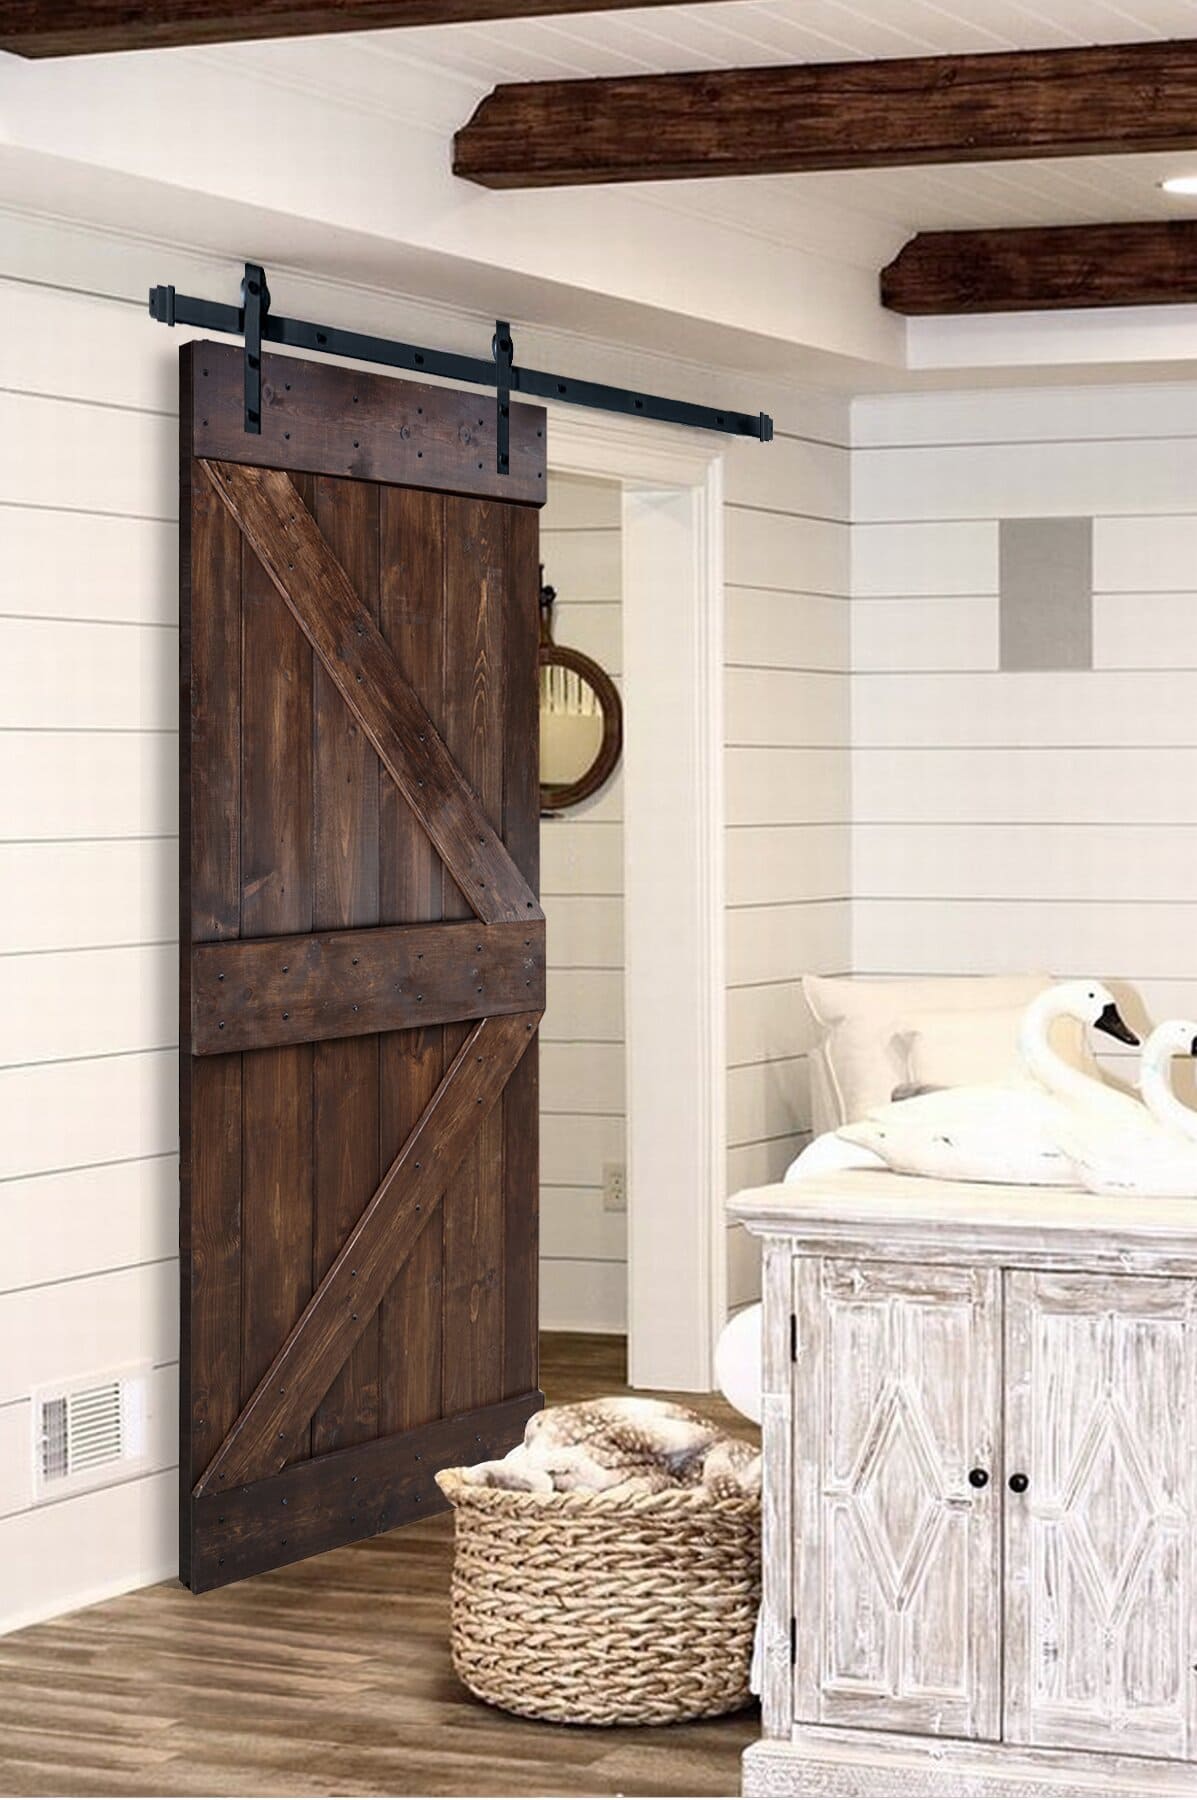 For Farmhouse, Go with a Sliding Barn Wood Door